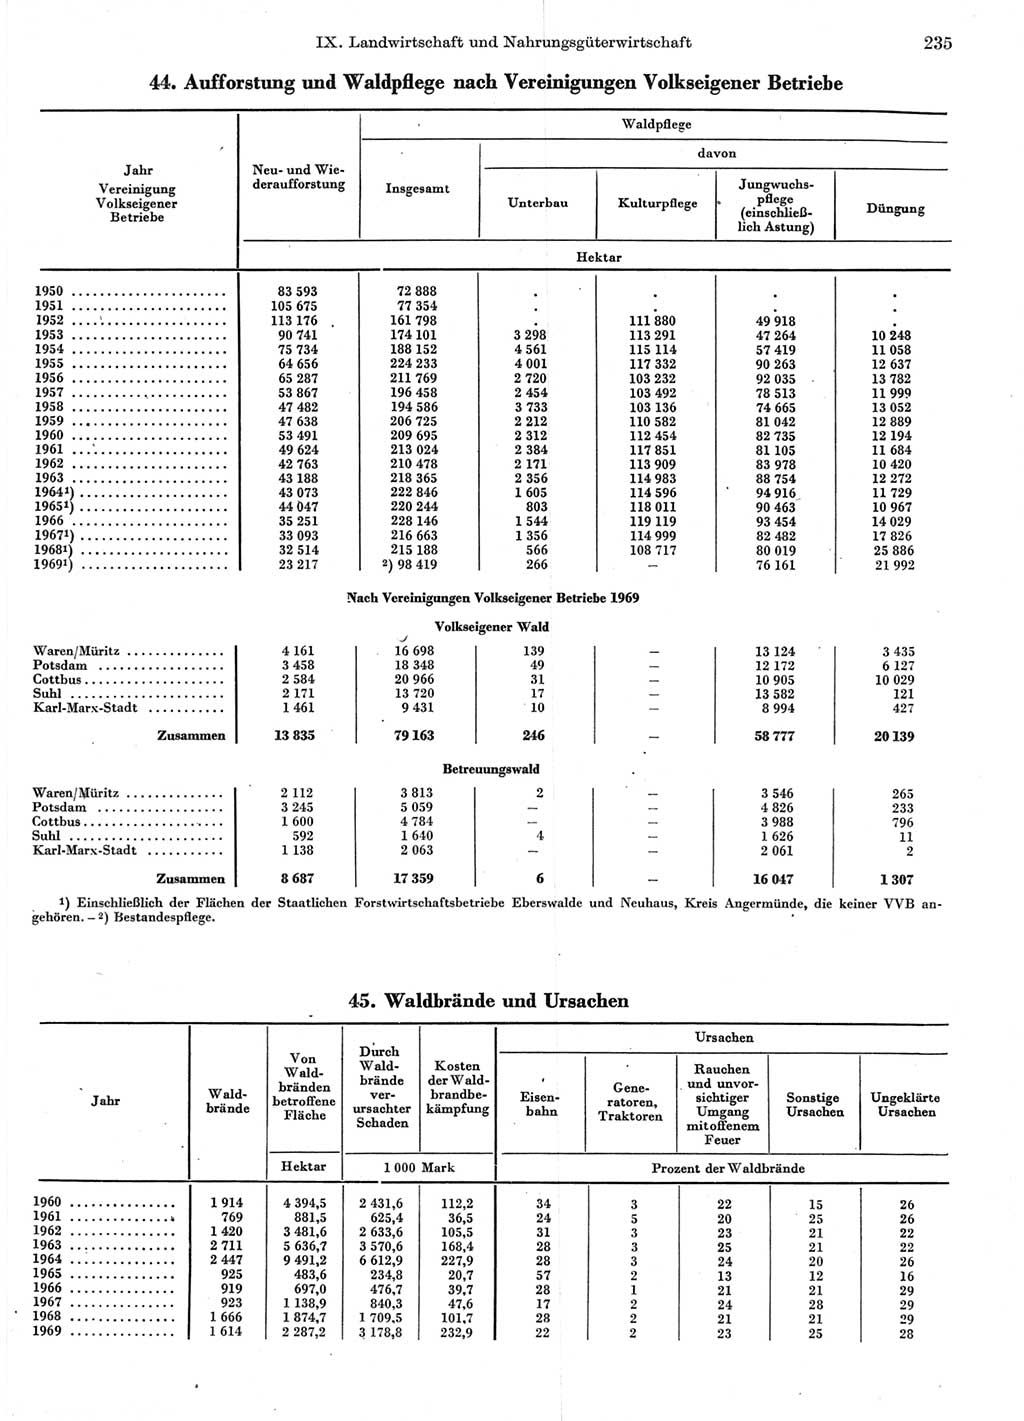 Statistisches Jahrbuch der Deutschen Demokratischen Republik (DDR) 1970, Seite 235 (Stat. Jb. DDR 1970, S. 235)